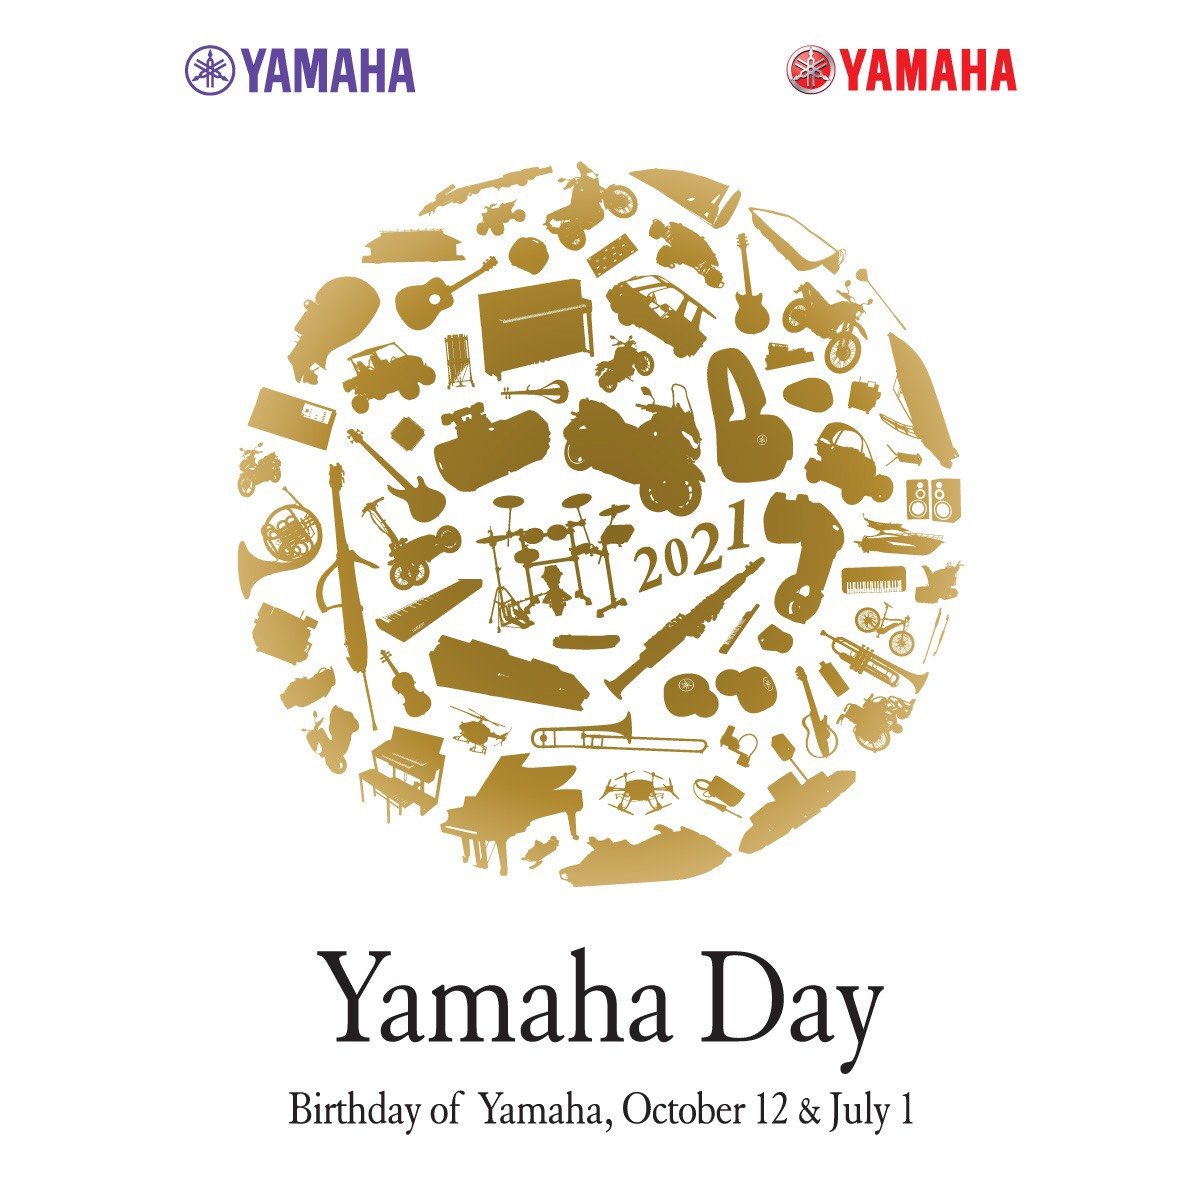 Happy birthday Yamaha ก้าวที่ 66 แห่งผู้นำธุรกิจรถจักรยานยนต์ของโลก